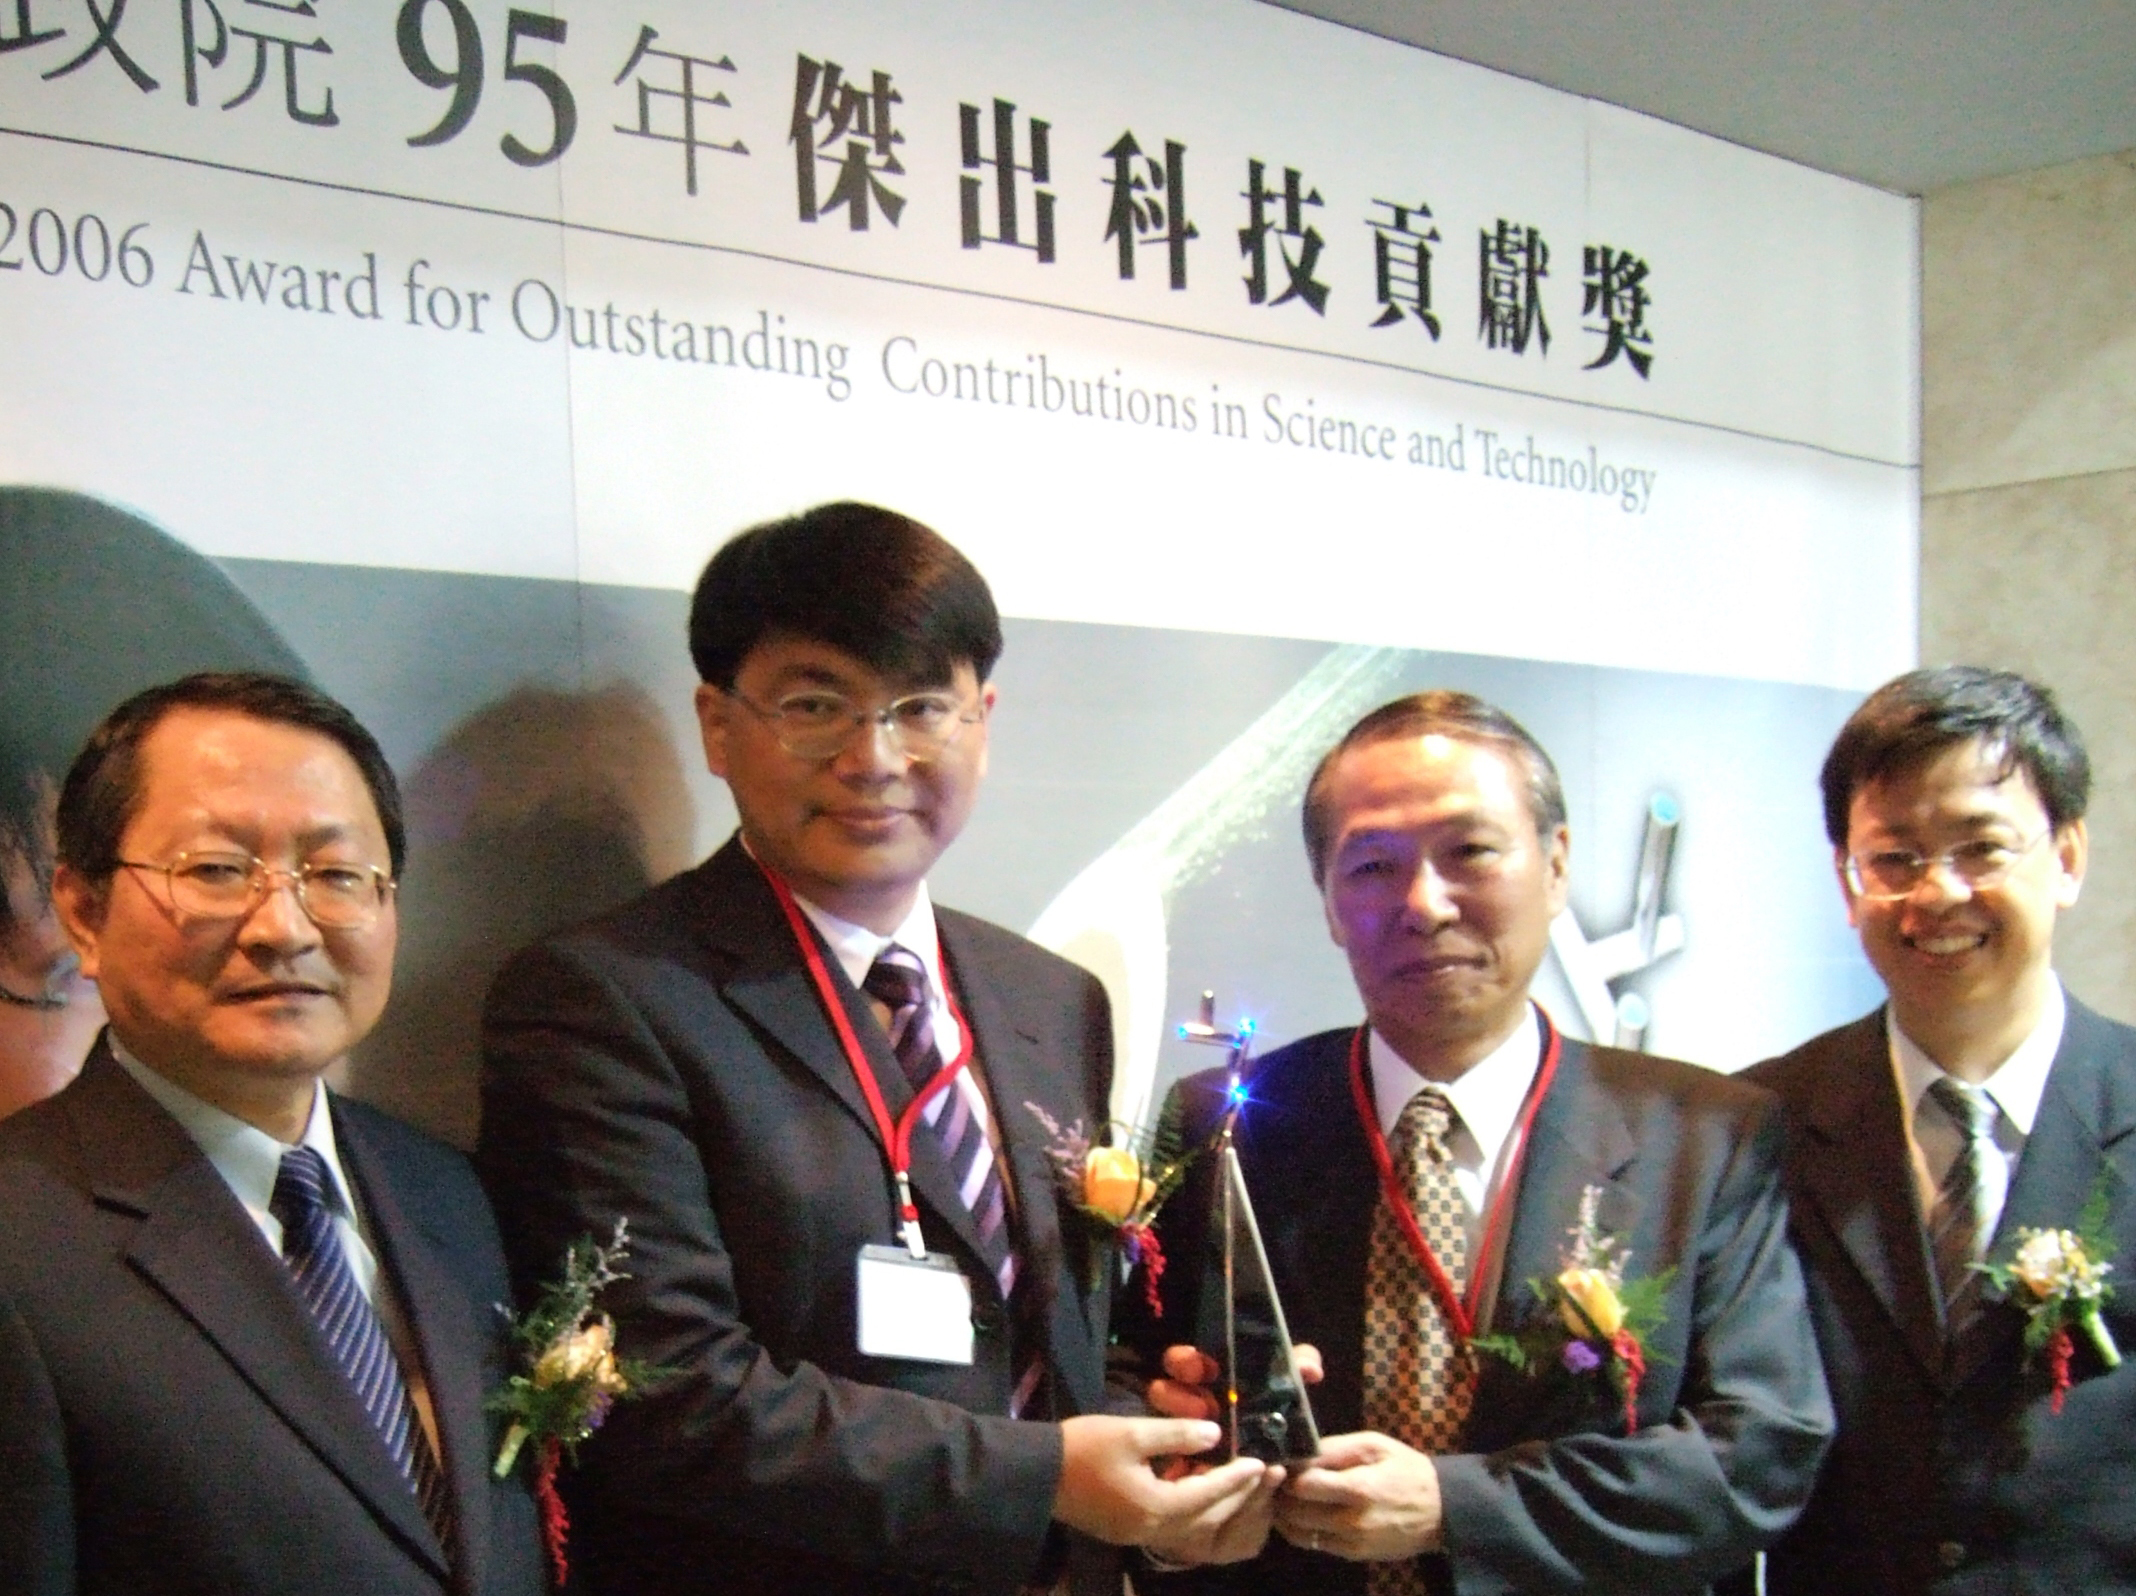 依左而右為：林逢慶政委、林芳邦博士、黃煌煇教授與陳建仁主委